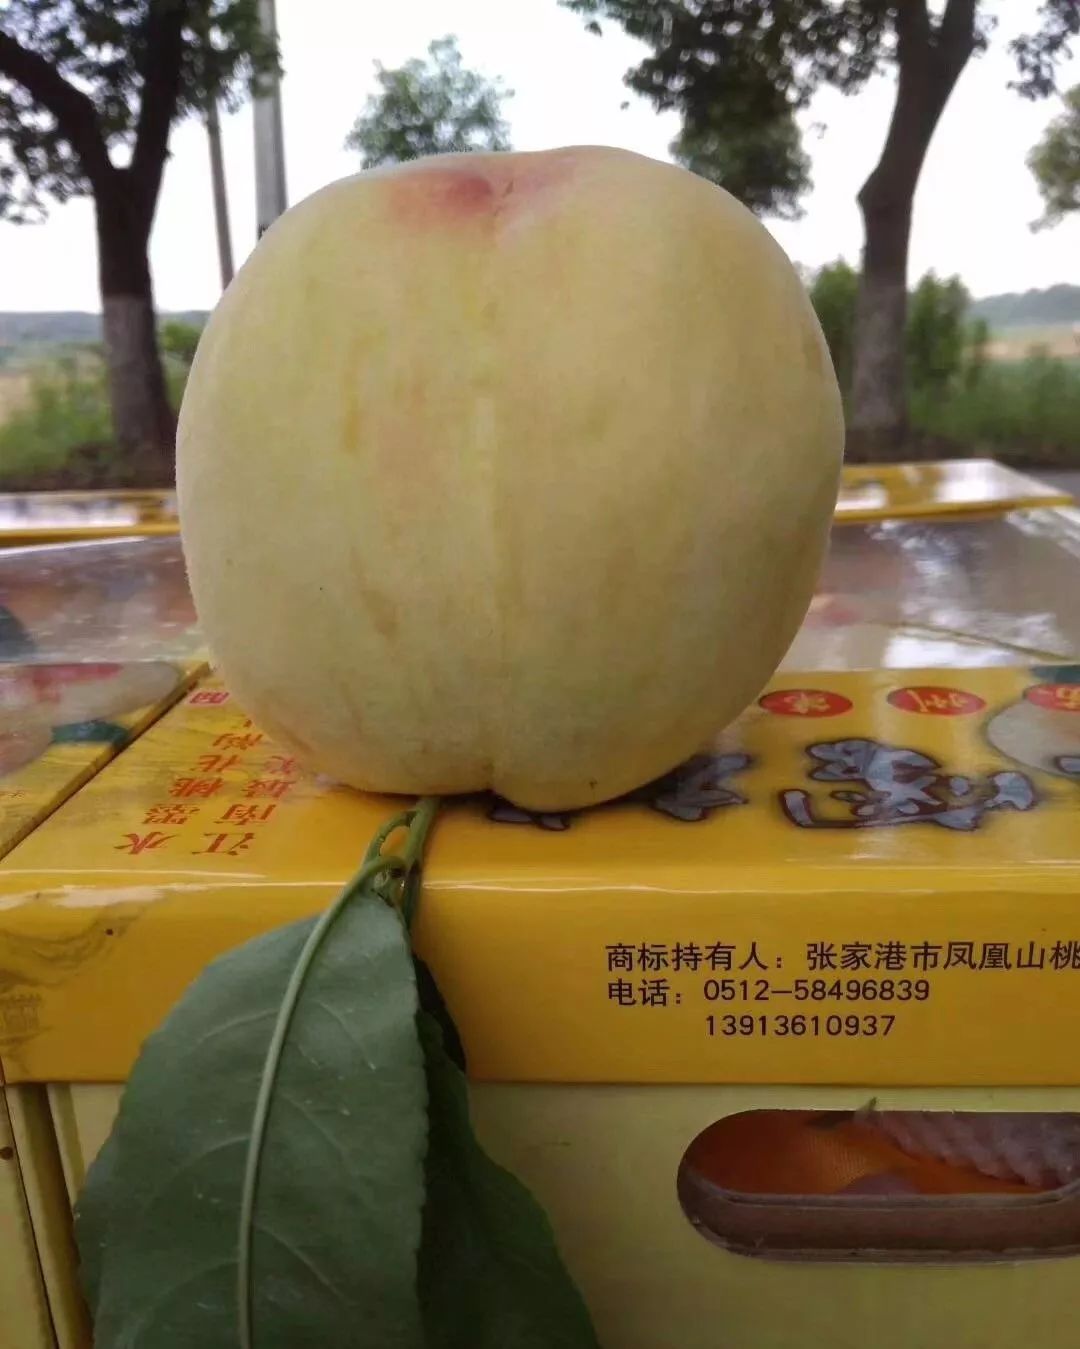 无锡阳山新产季水蜜桃首发 - 中国水果门户